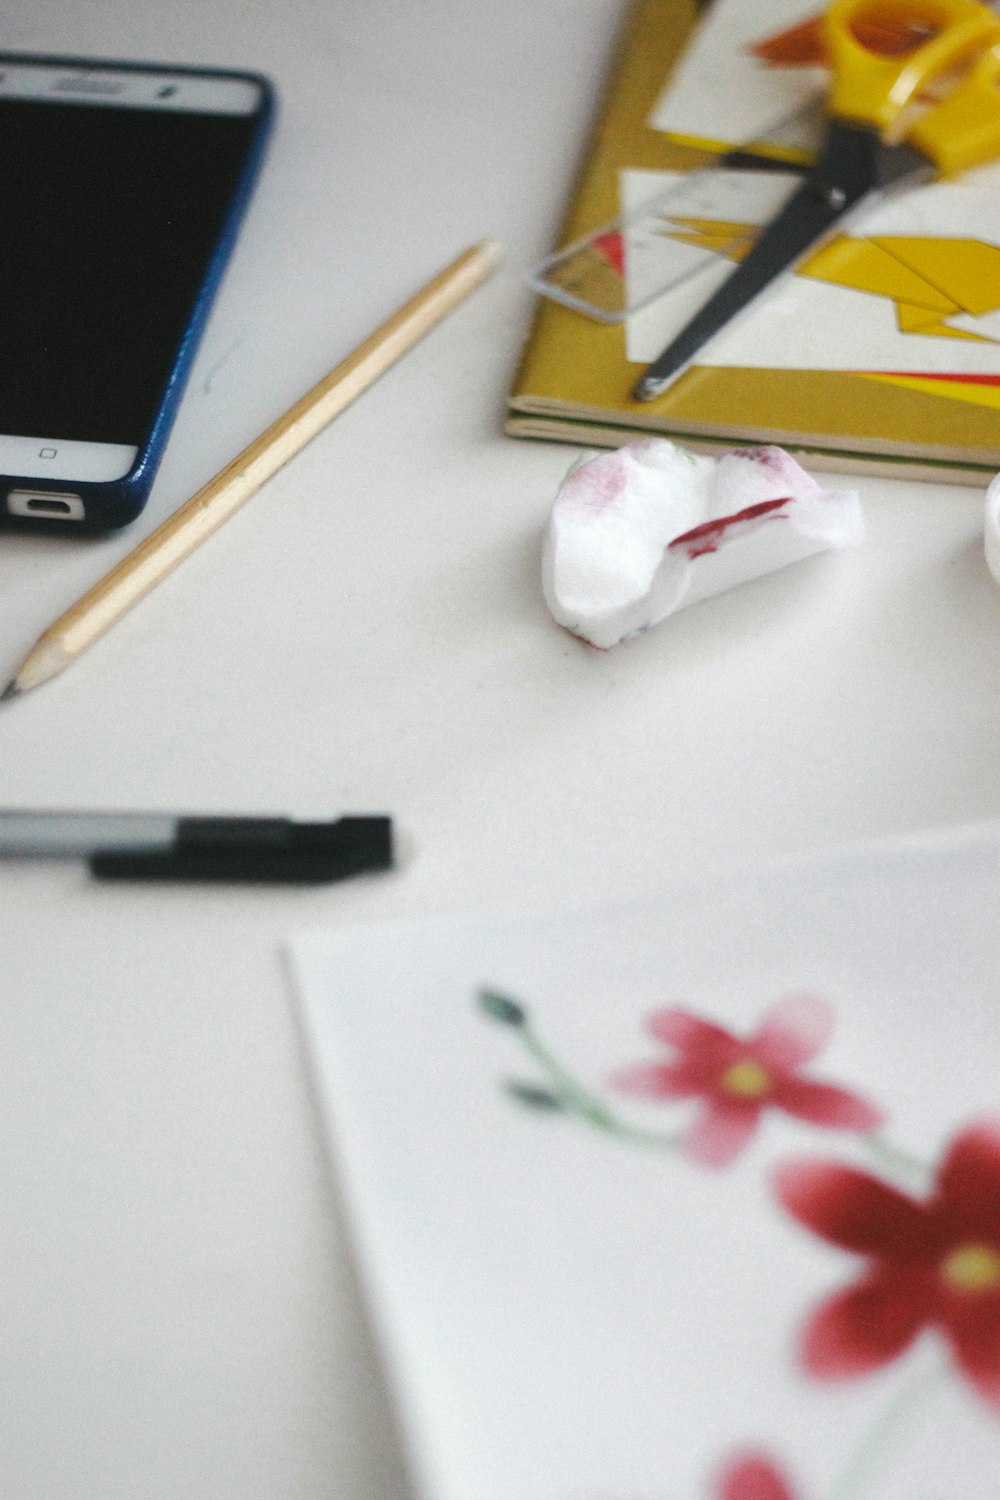 bolígrafo de clic negro junto a flor blanca y roja sobre mesa blanca